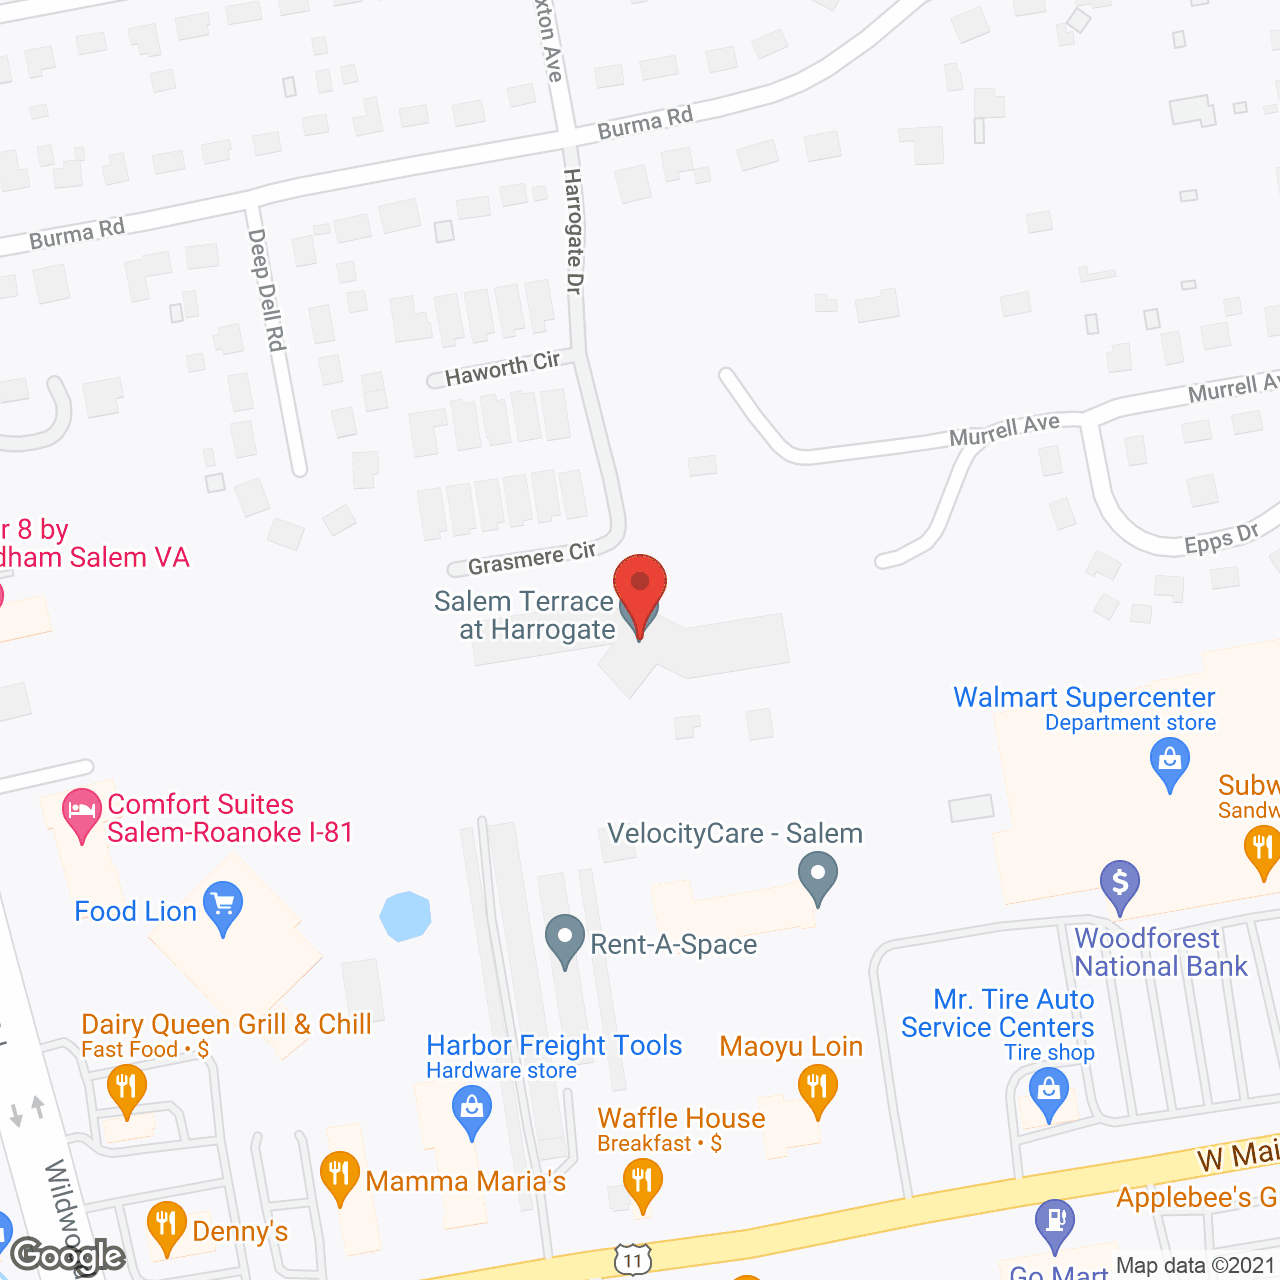 Friendship Salem Terrace in google map